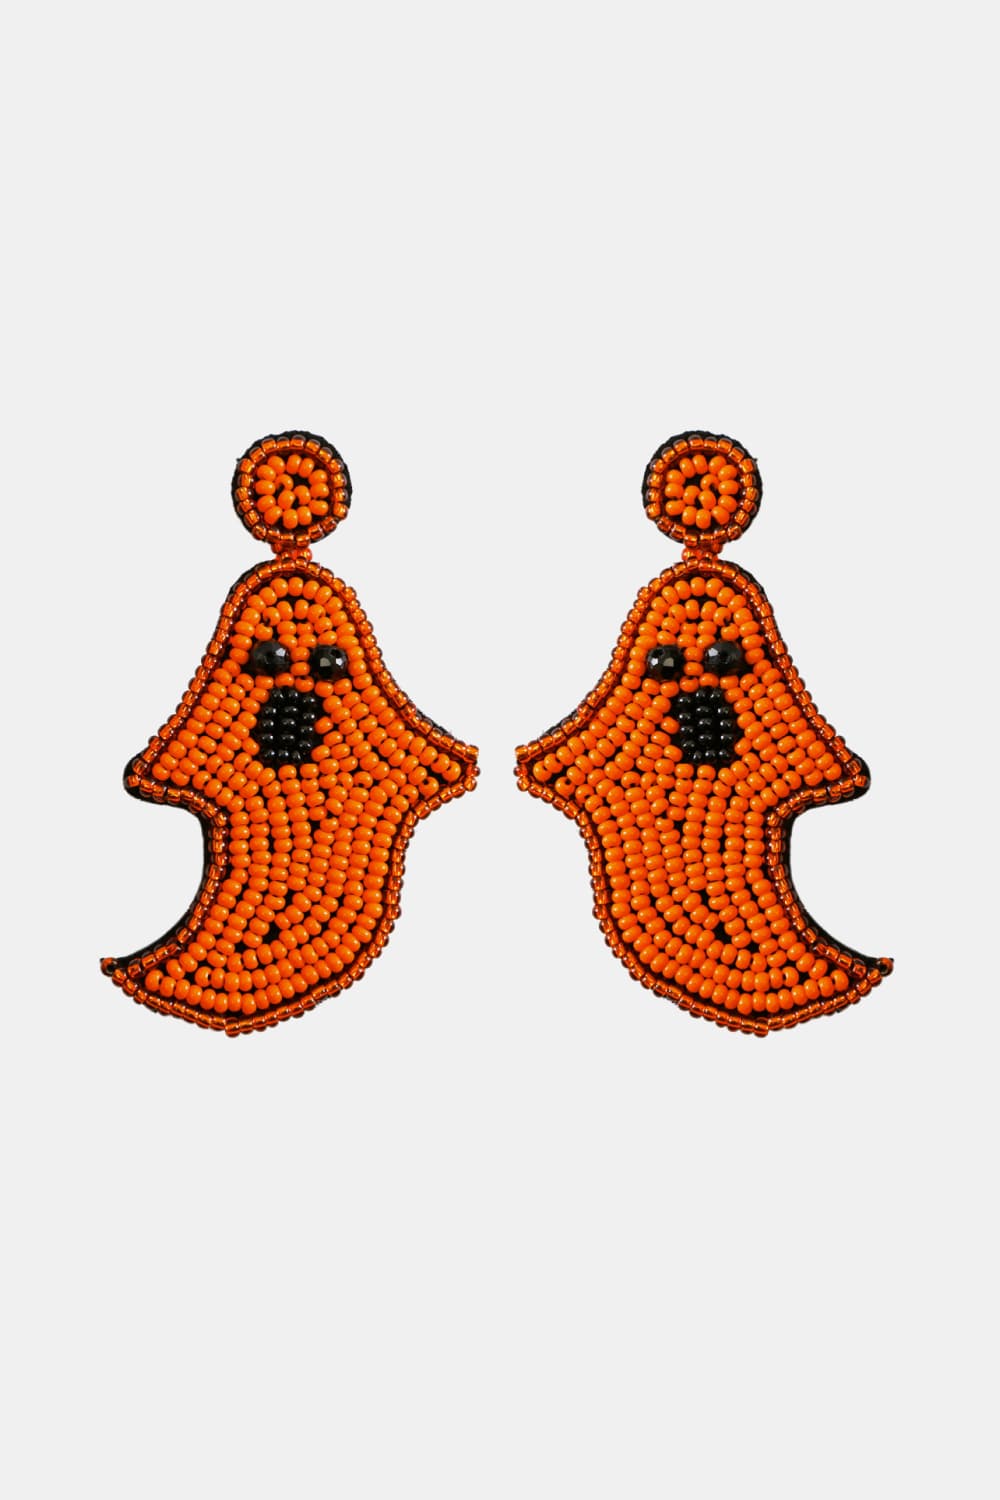 Spooky Ghost Beaded Dangle Earrings Halloween Jewelry